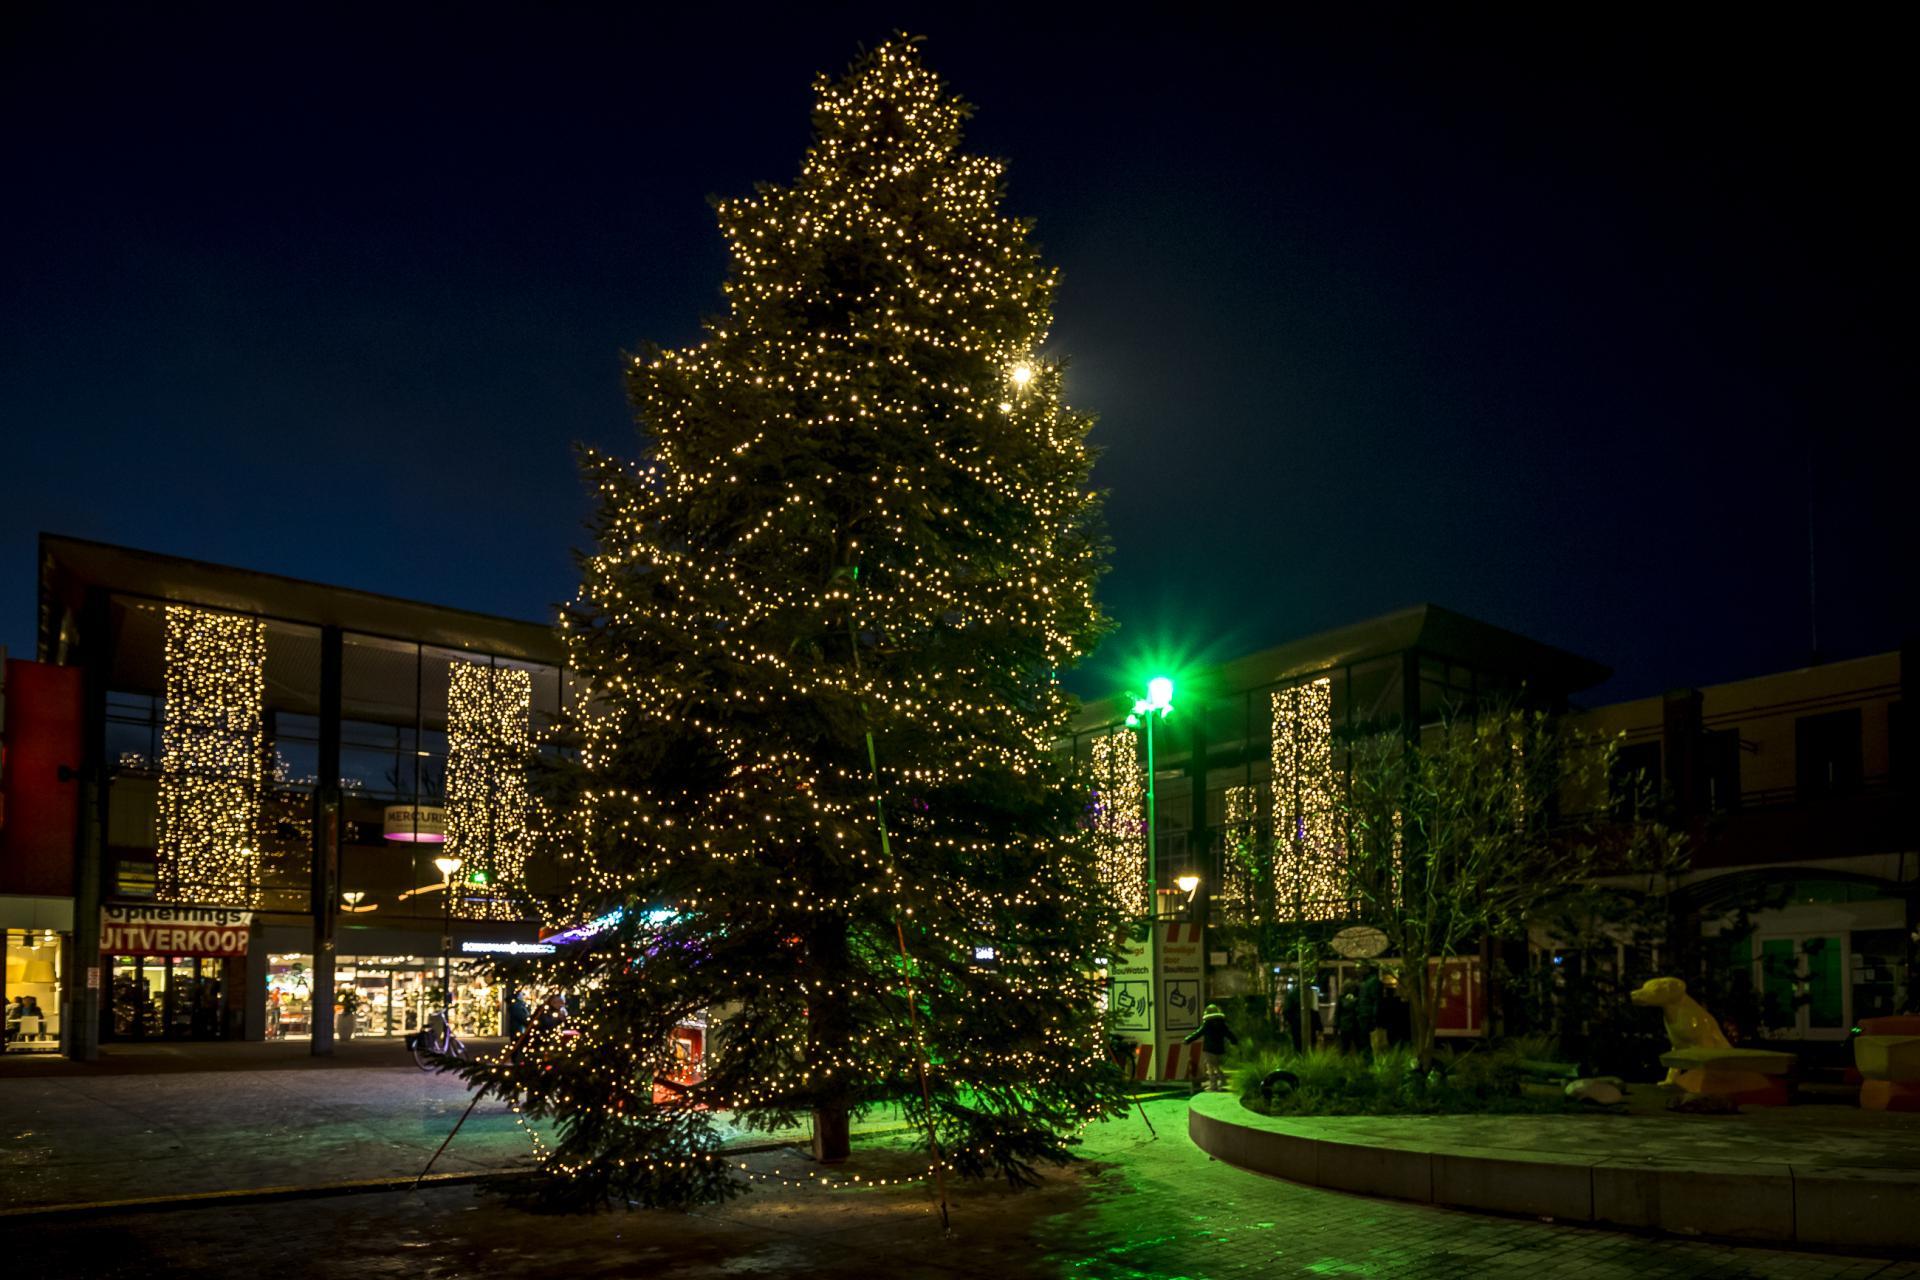 Kerstboom met lichtjes op het koopmansplein